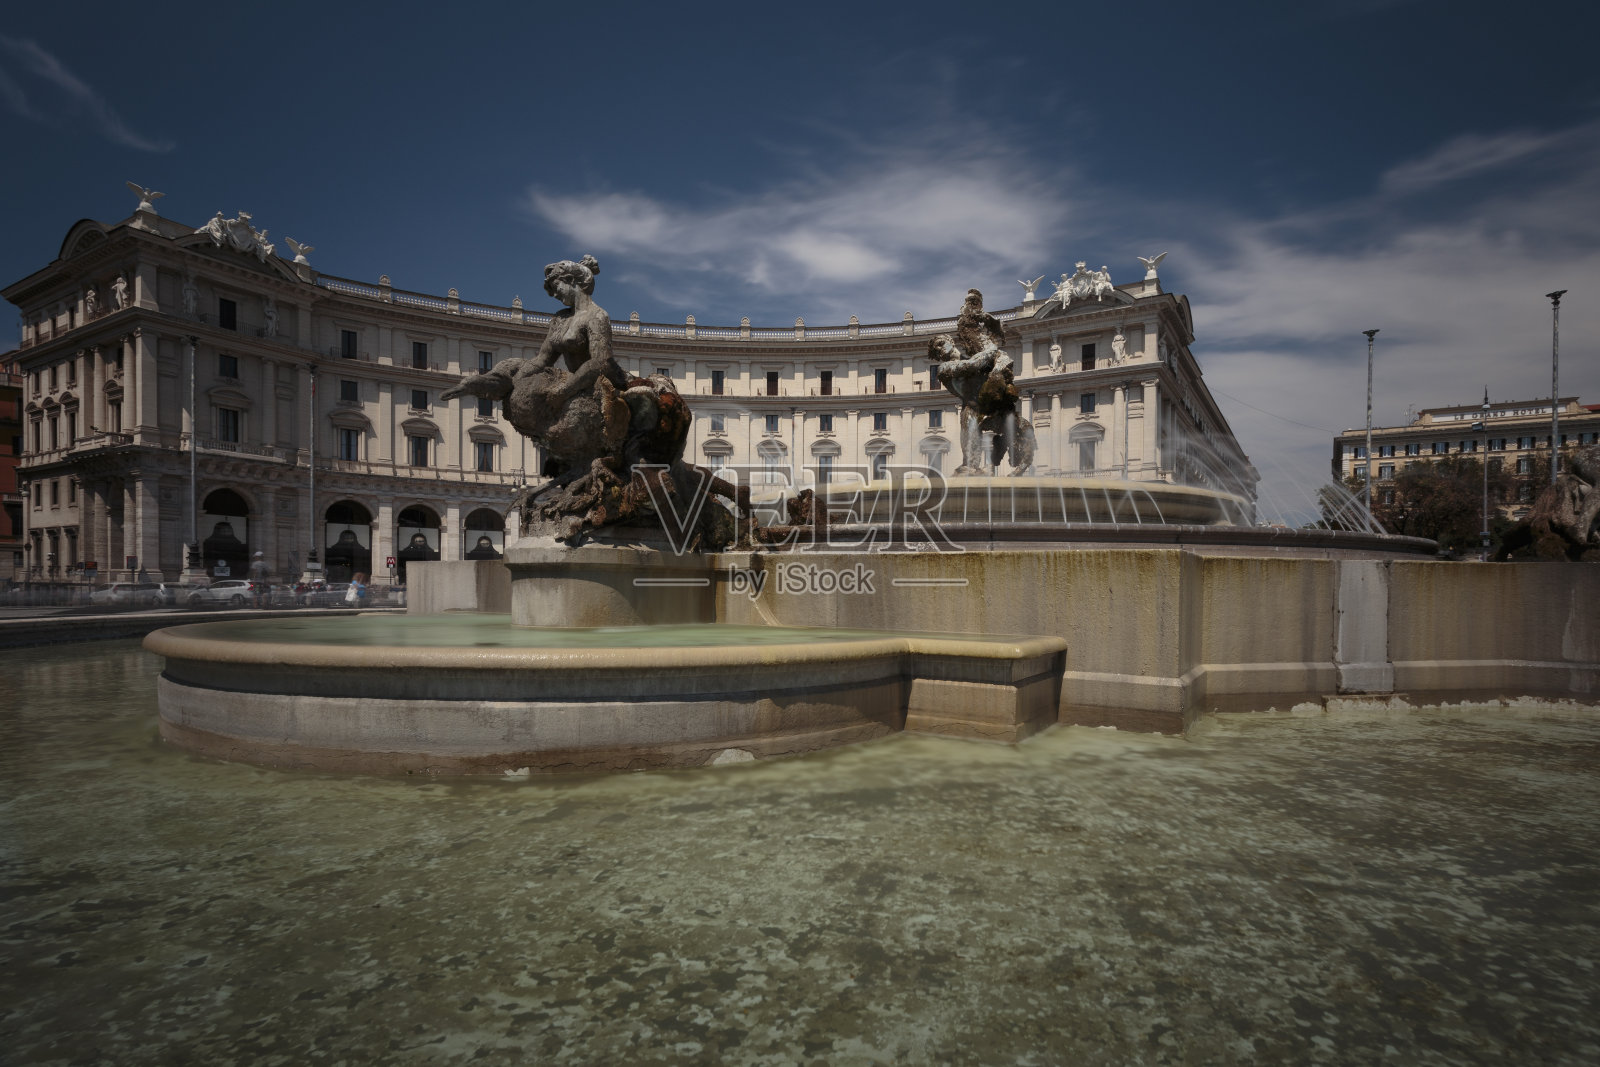 马里奥·鲁泰利(Mario Rutelli)在共和国广场设计的仙女喷泉照片摄影图片